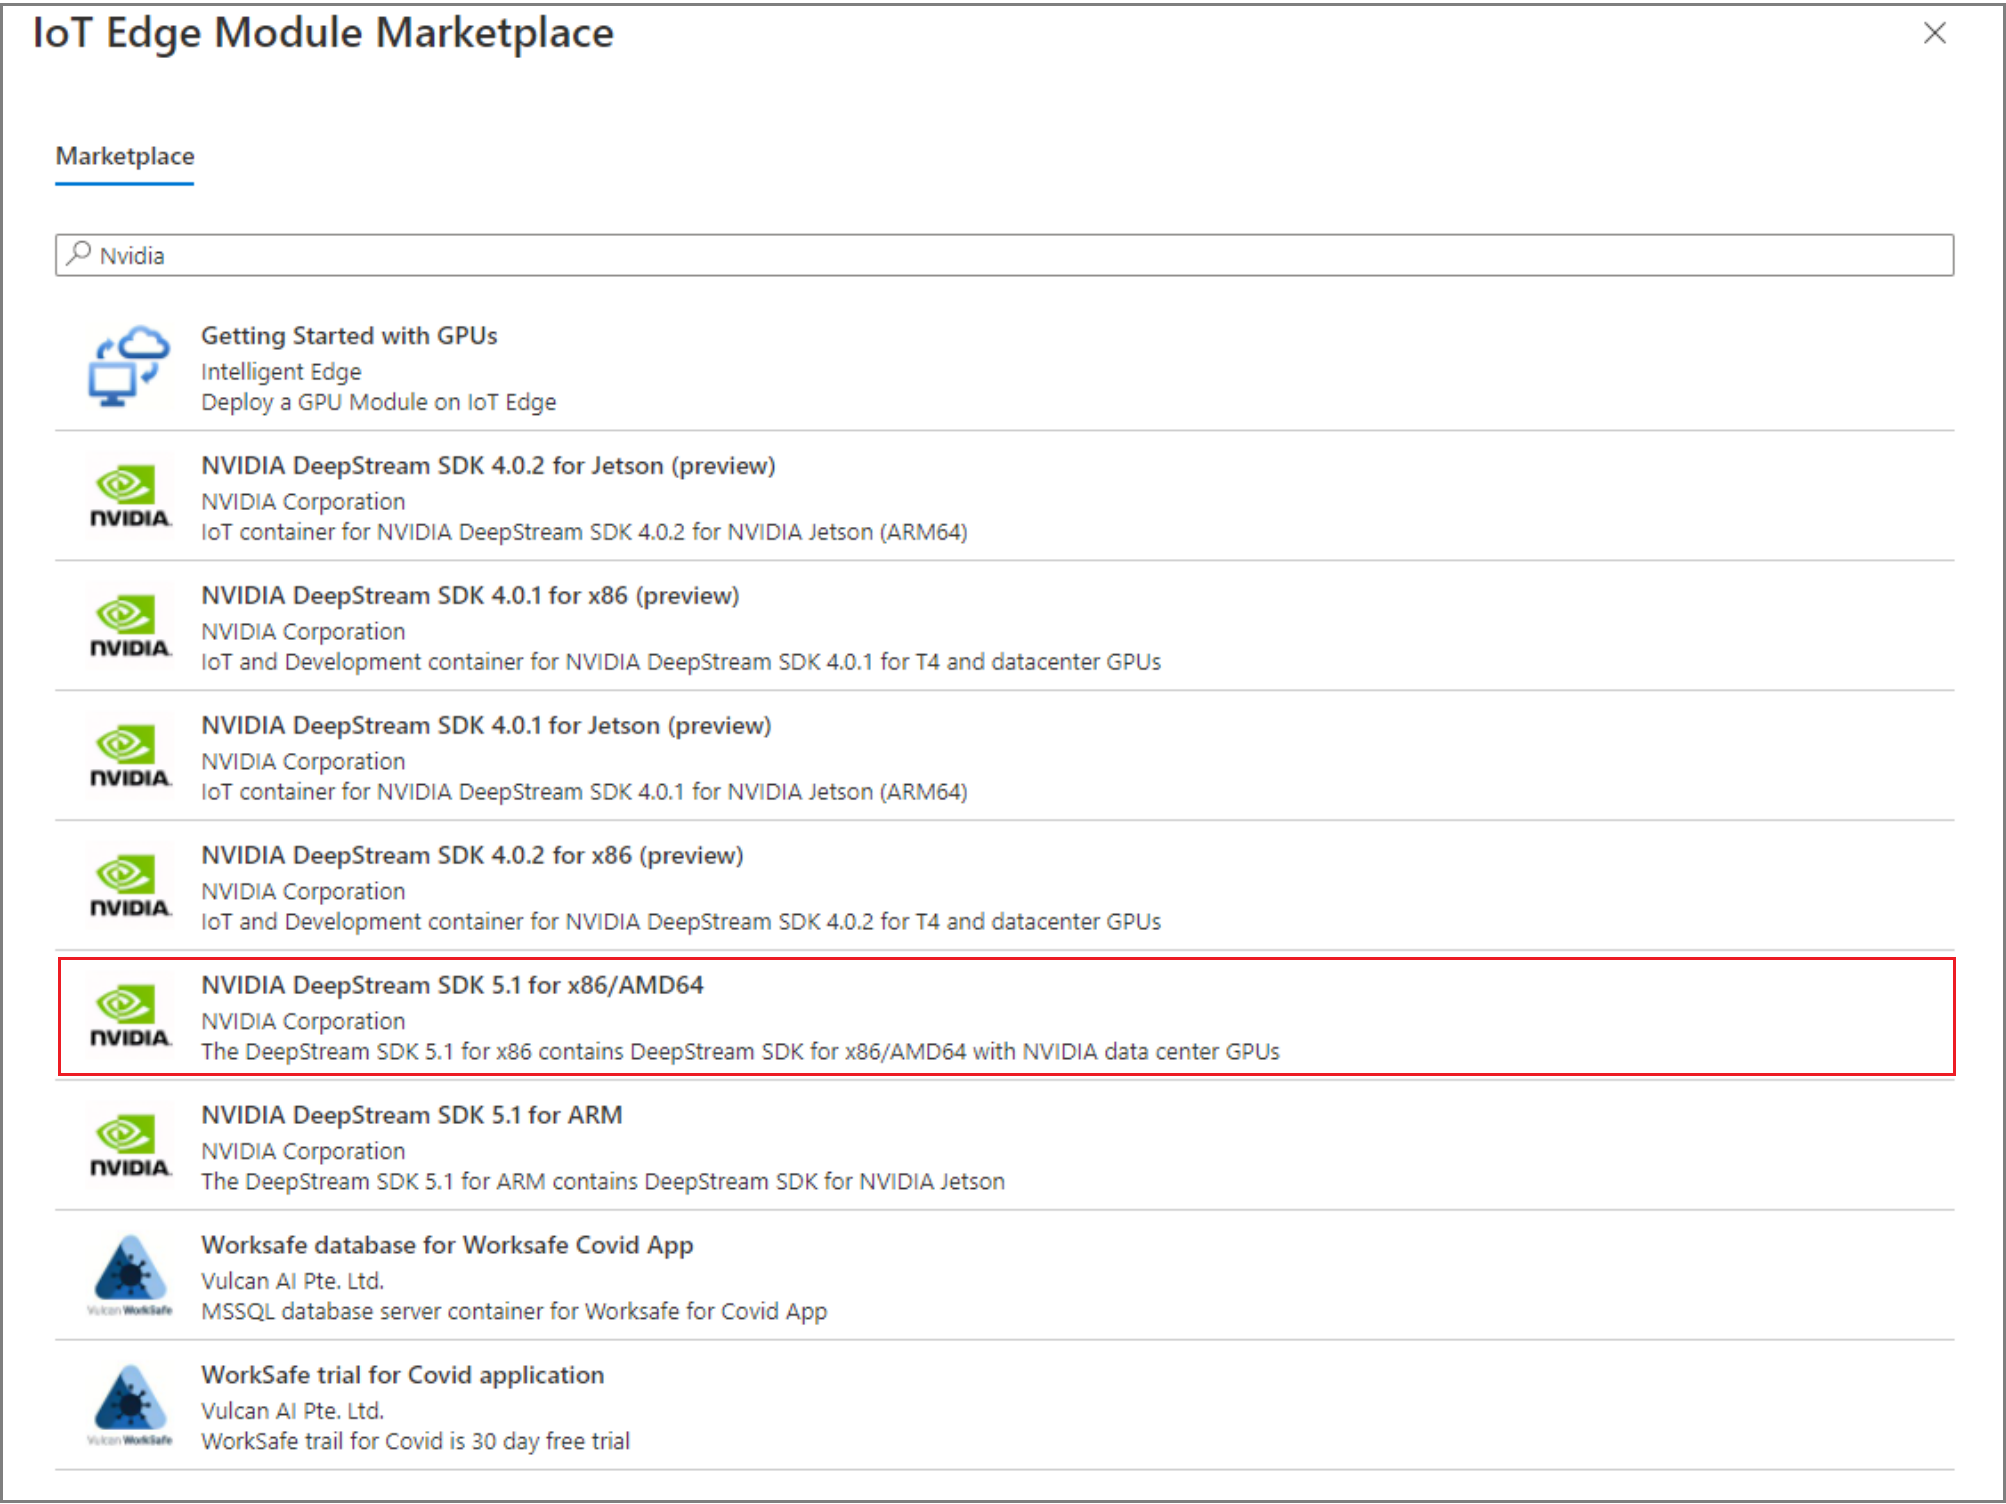 لقطة شاشة لمدخل Microsoft Azure، IoT Edge Module Marketplace، خيارات الوحدات النمطية.